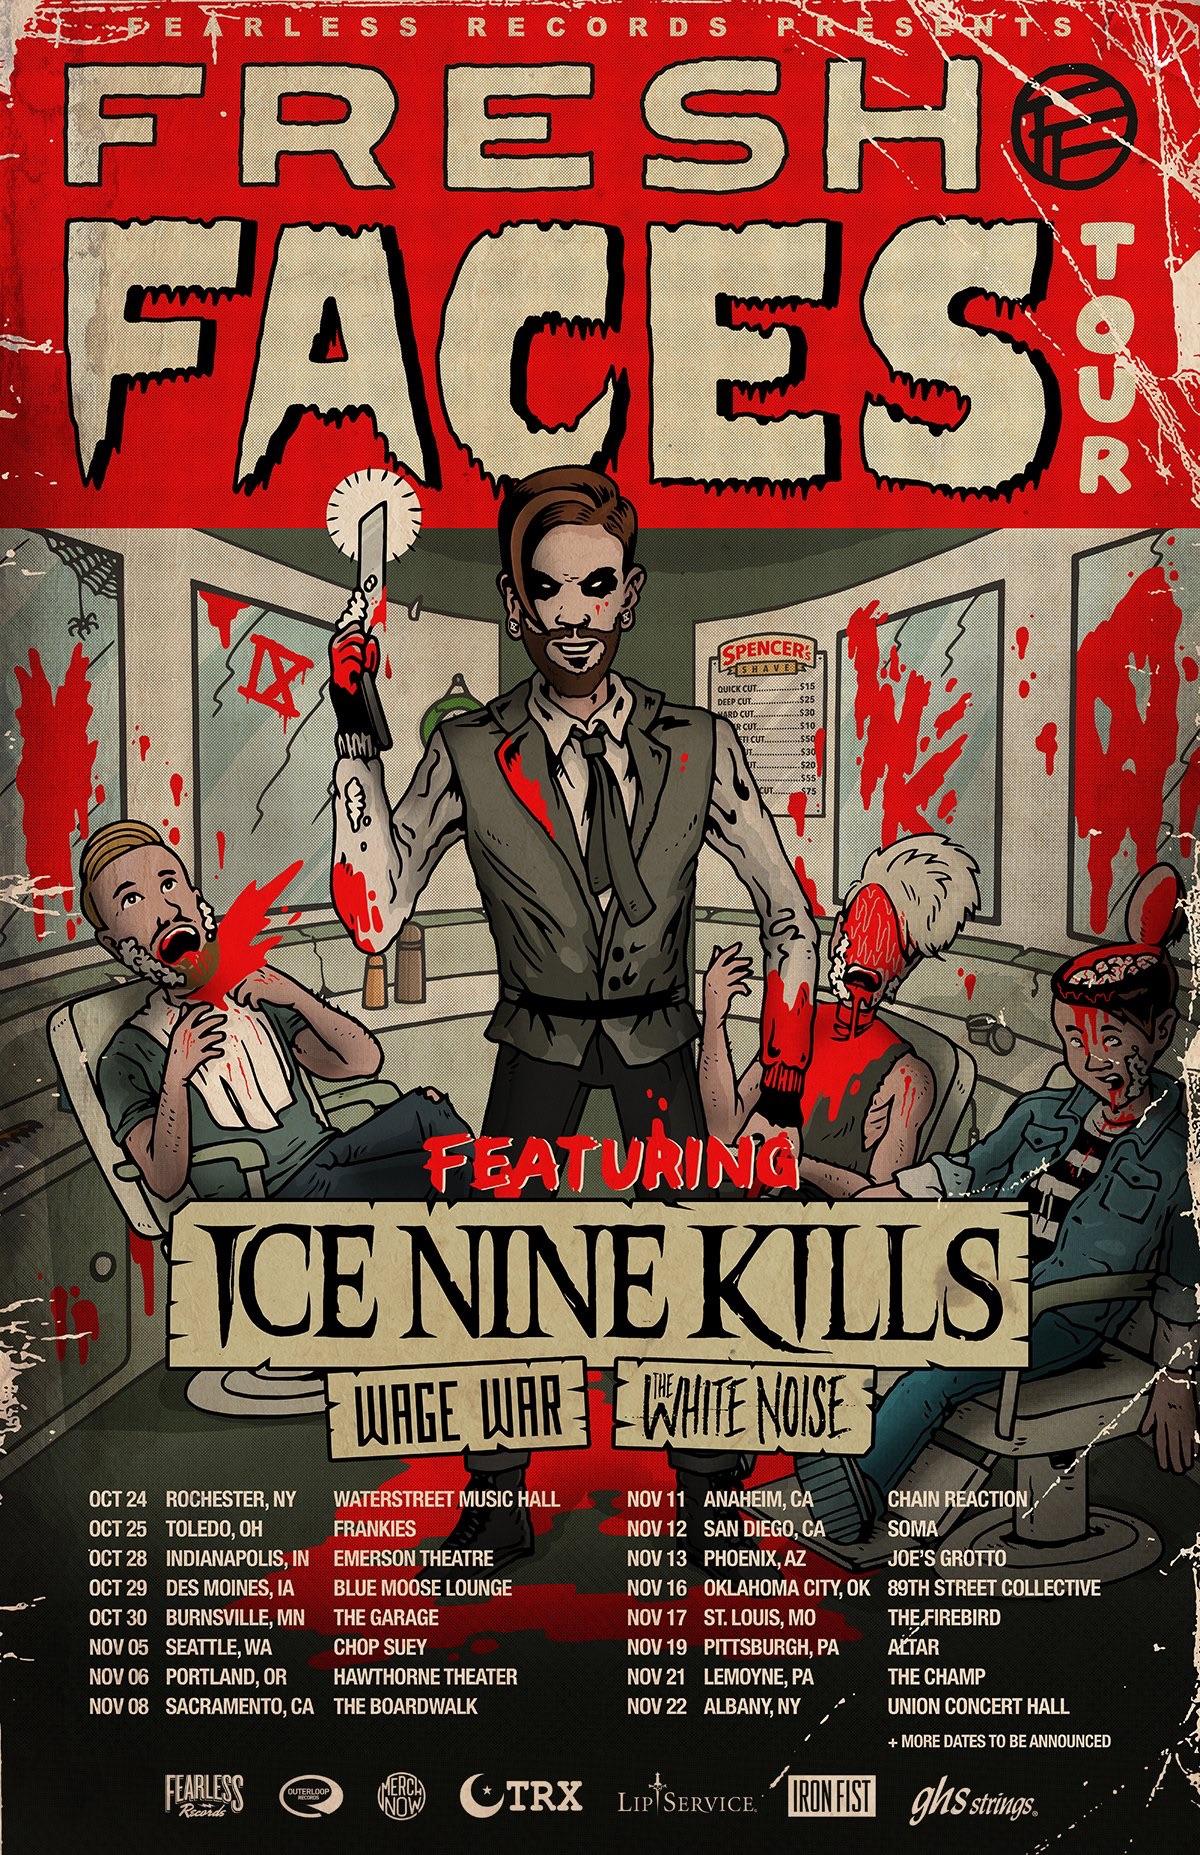 Ice nine kills Logos